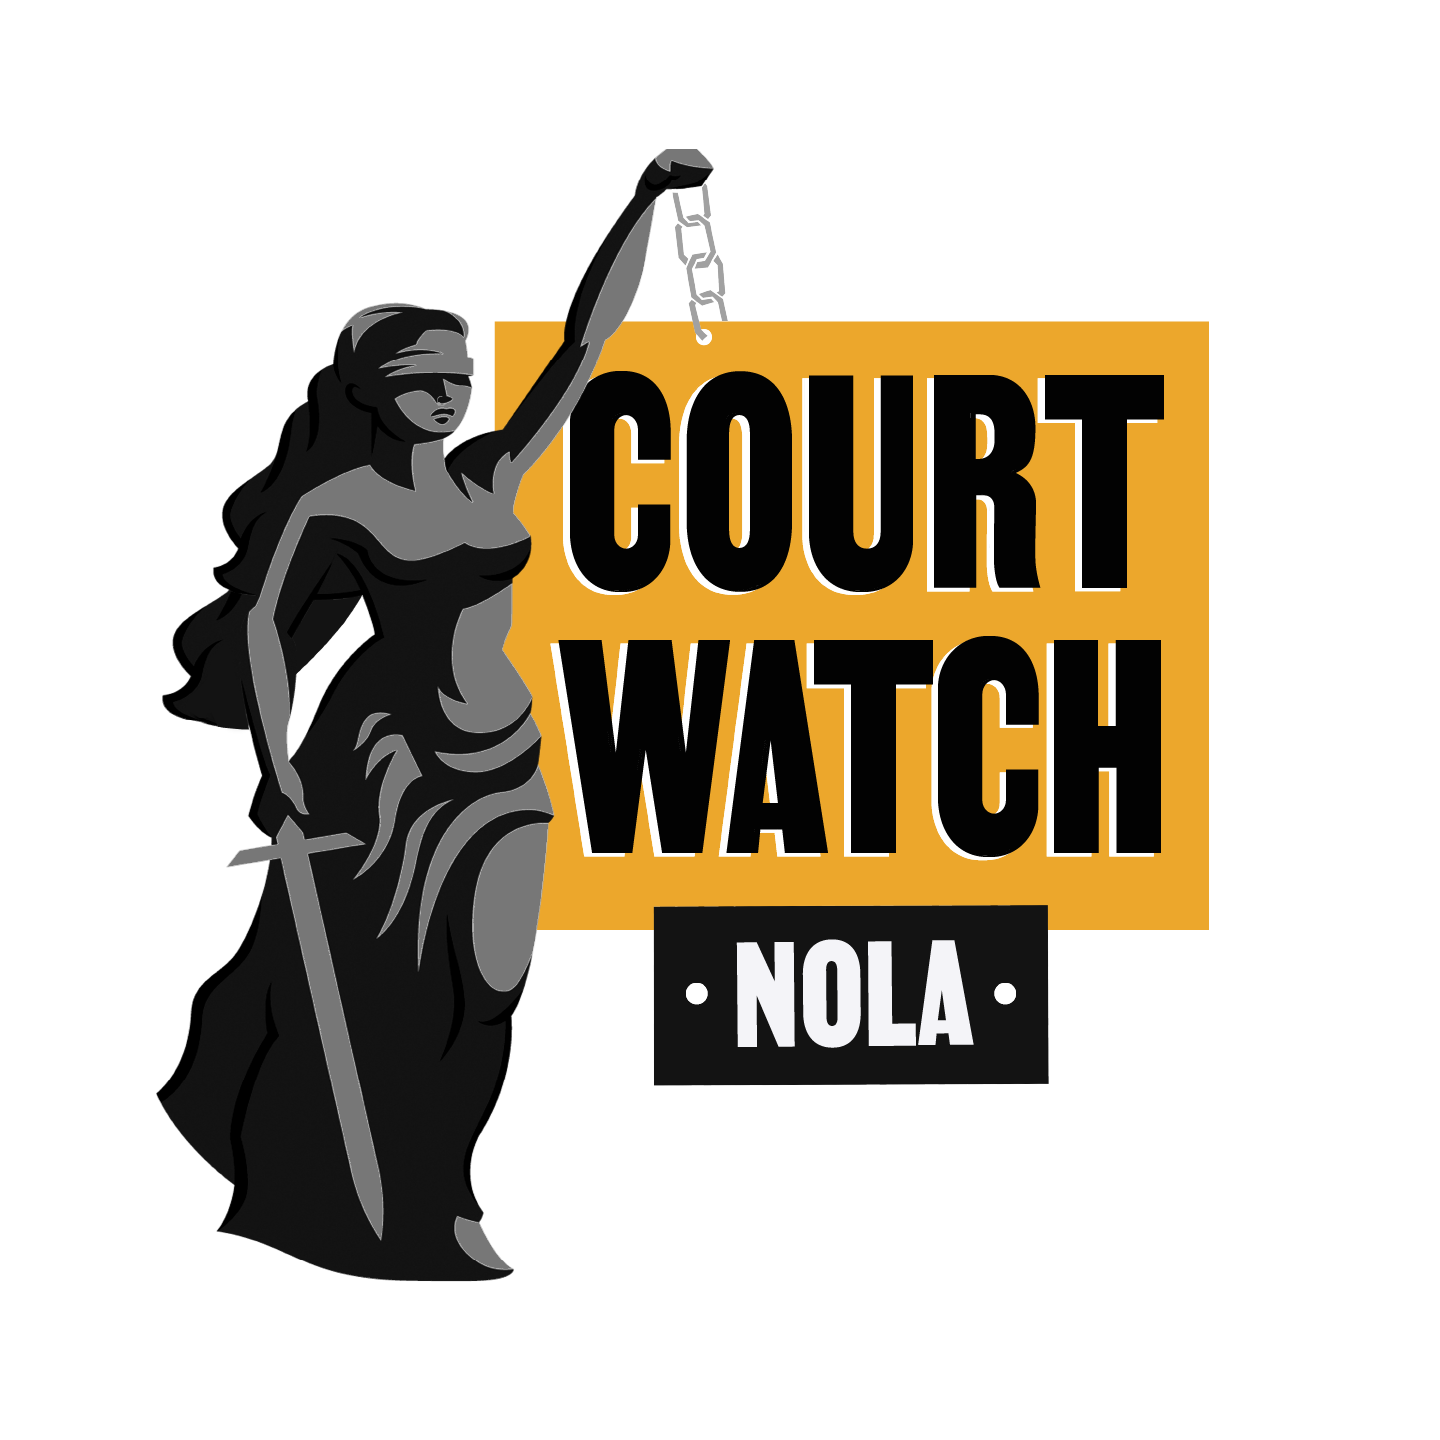 Court Watch NOLA